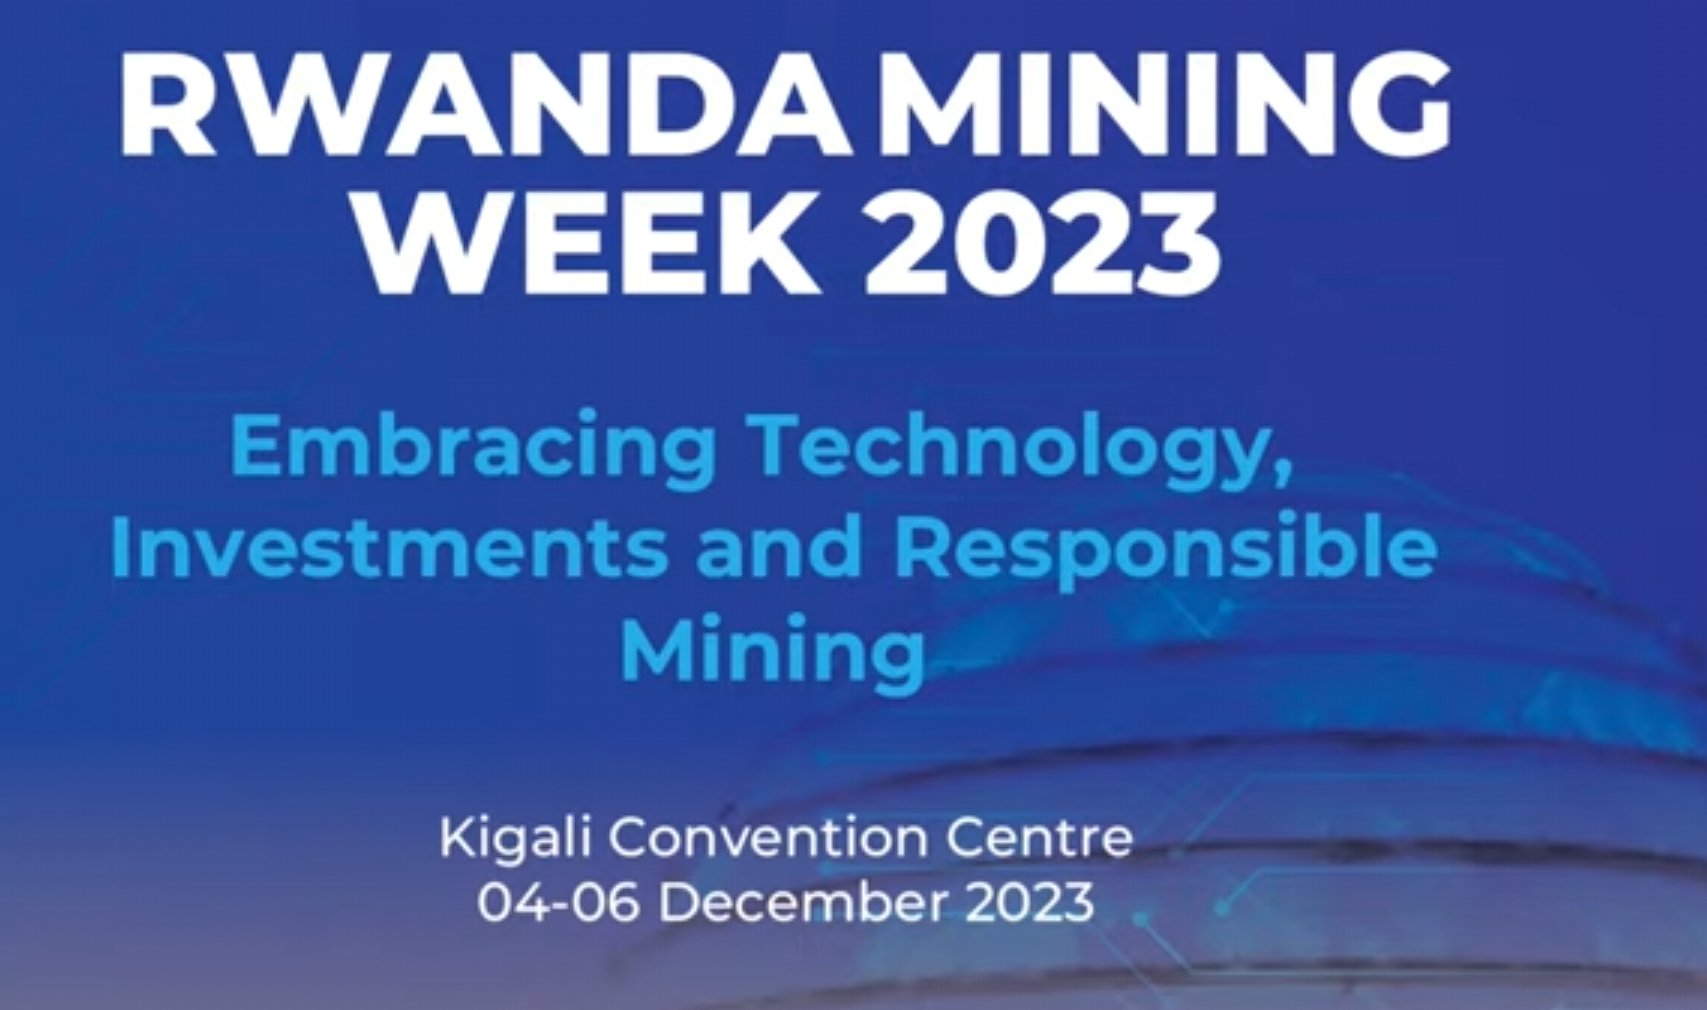 HMC Ltd at Rwanda Mining Week 2023